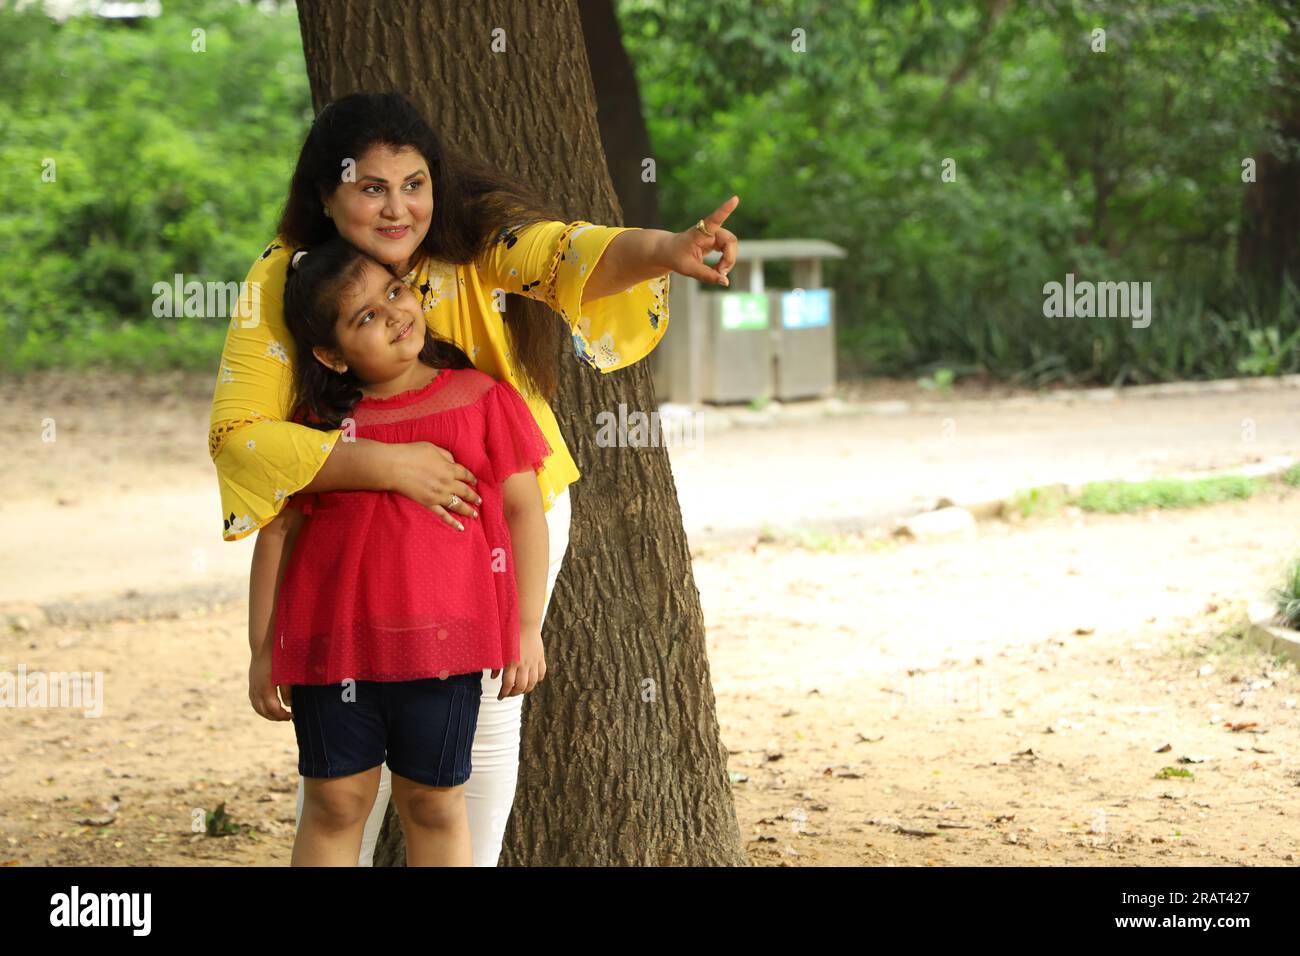 Madre e figlia felici che si divertono insieme in un parco pubblico. madre single che gioca con sua figlia in un'atmosfera verde e pulita. Foto Stock